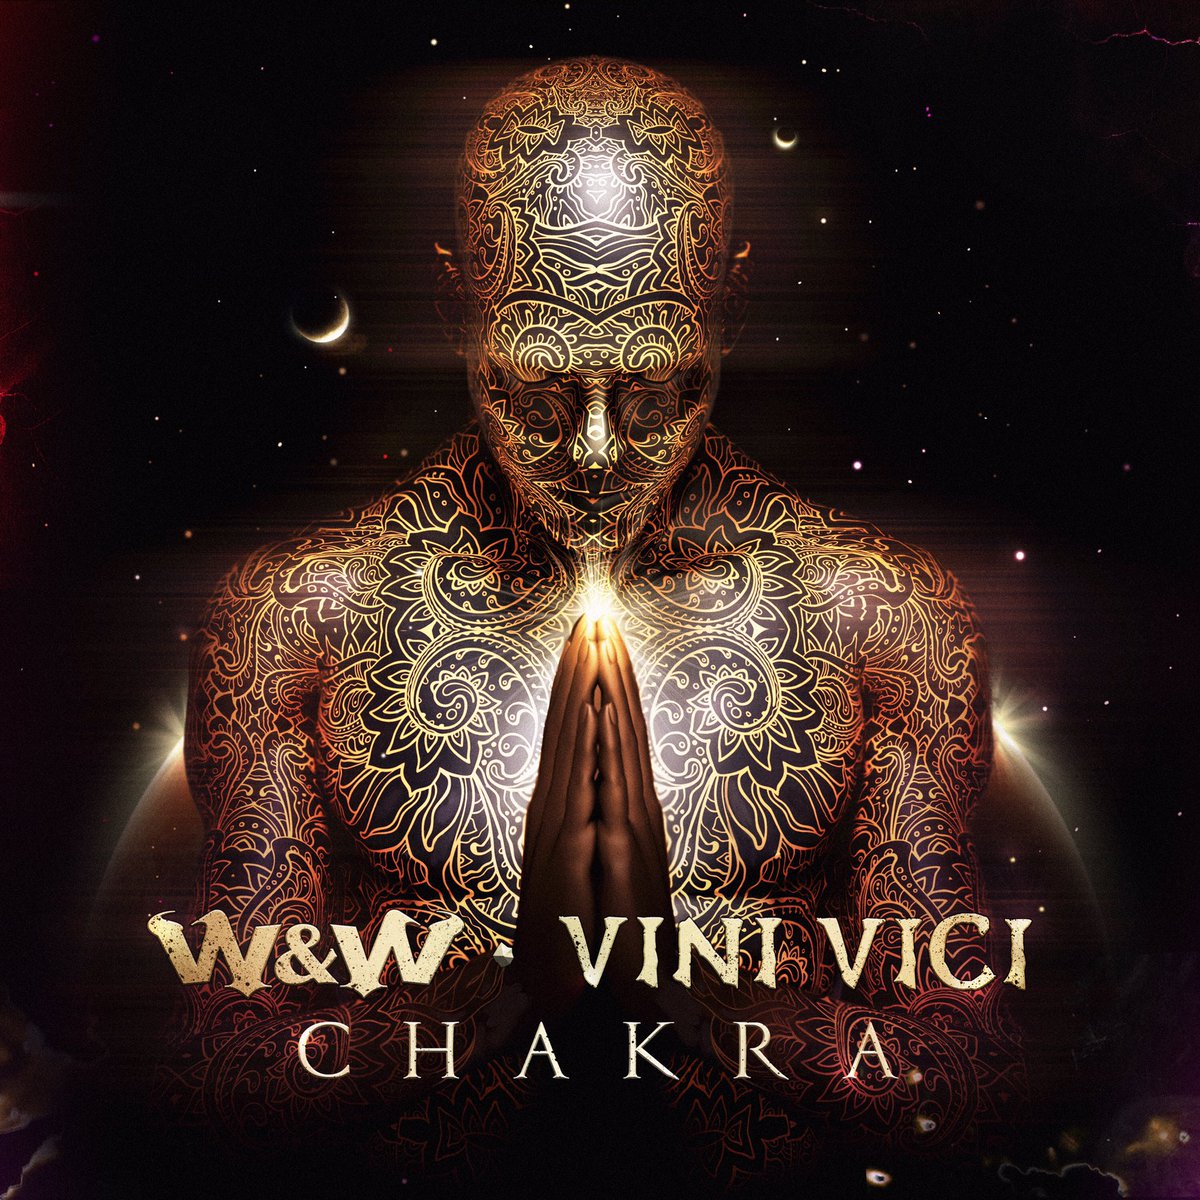 W&W x Vini Vici - Chakra | September 18 🙏🙏 https://t.co/LPiFO6KeCf